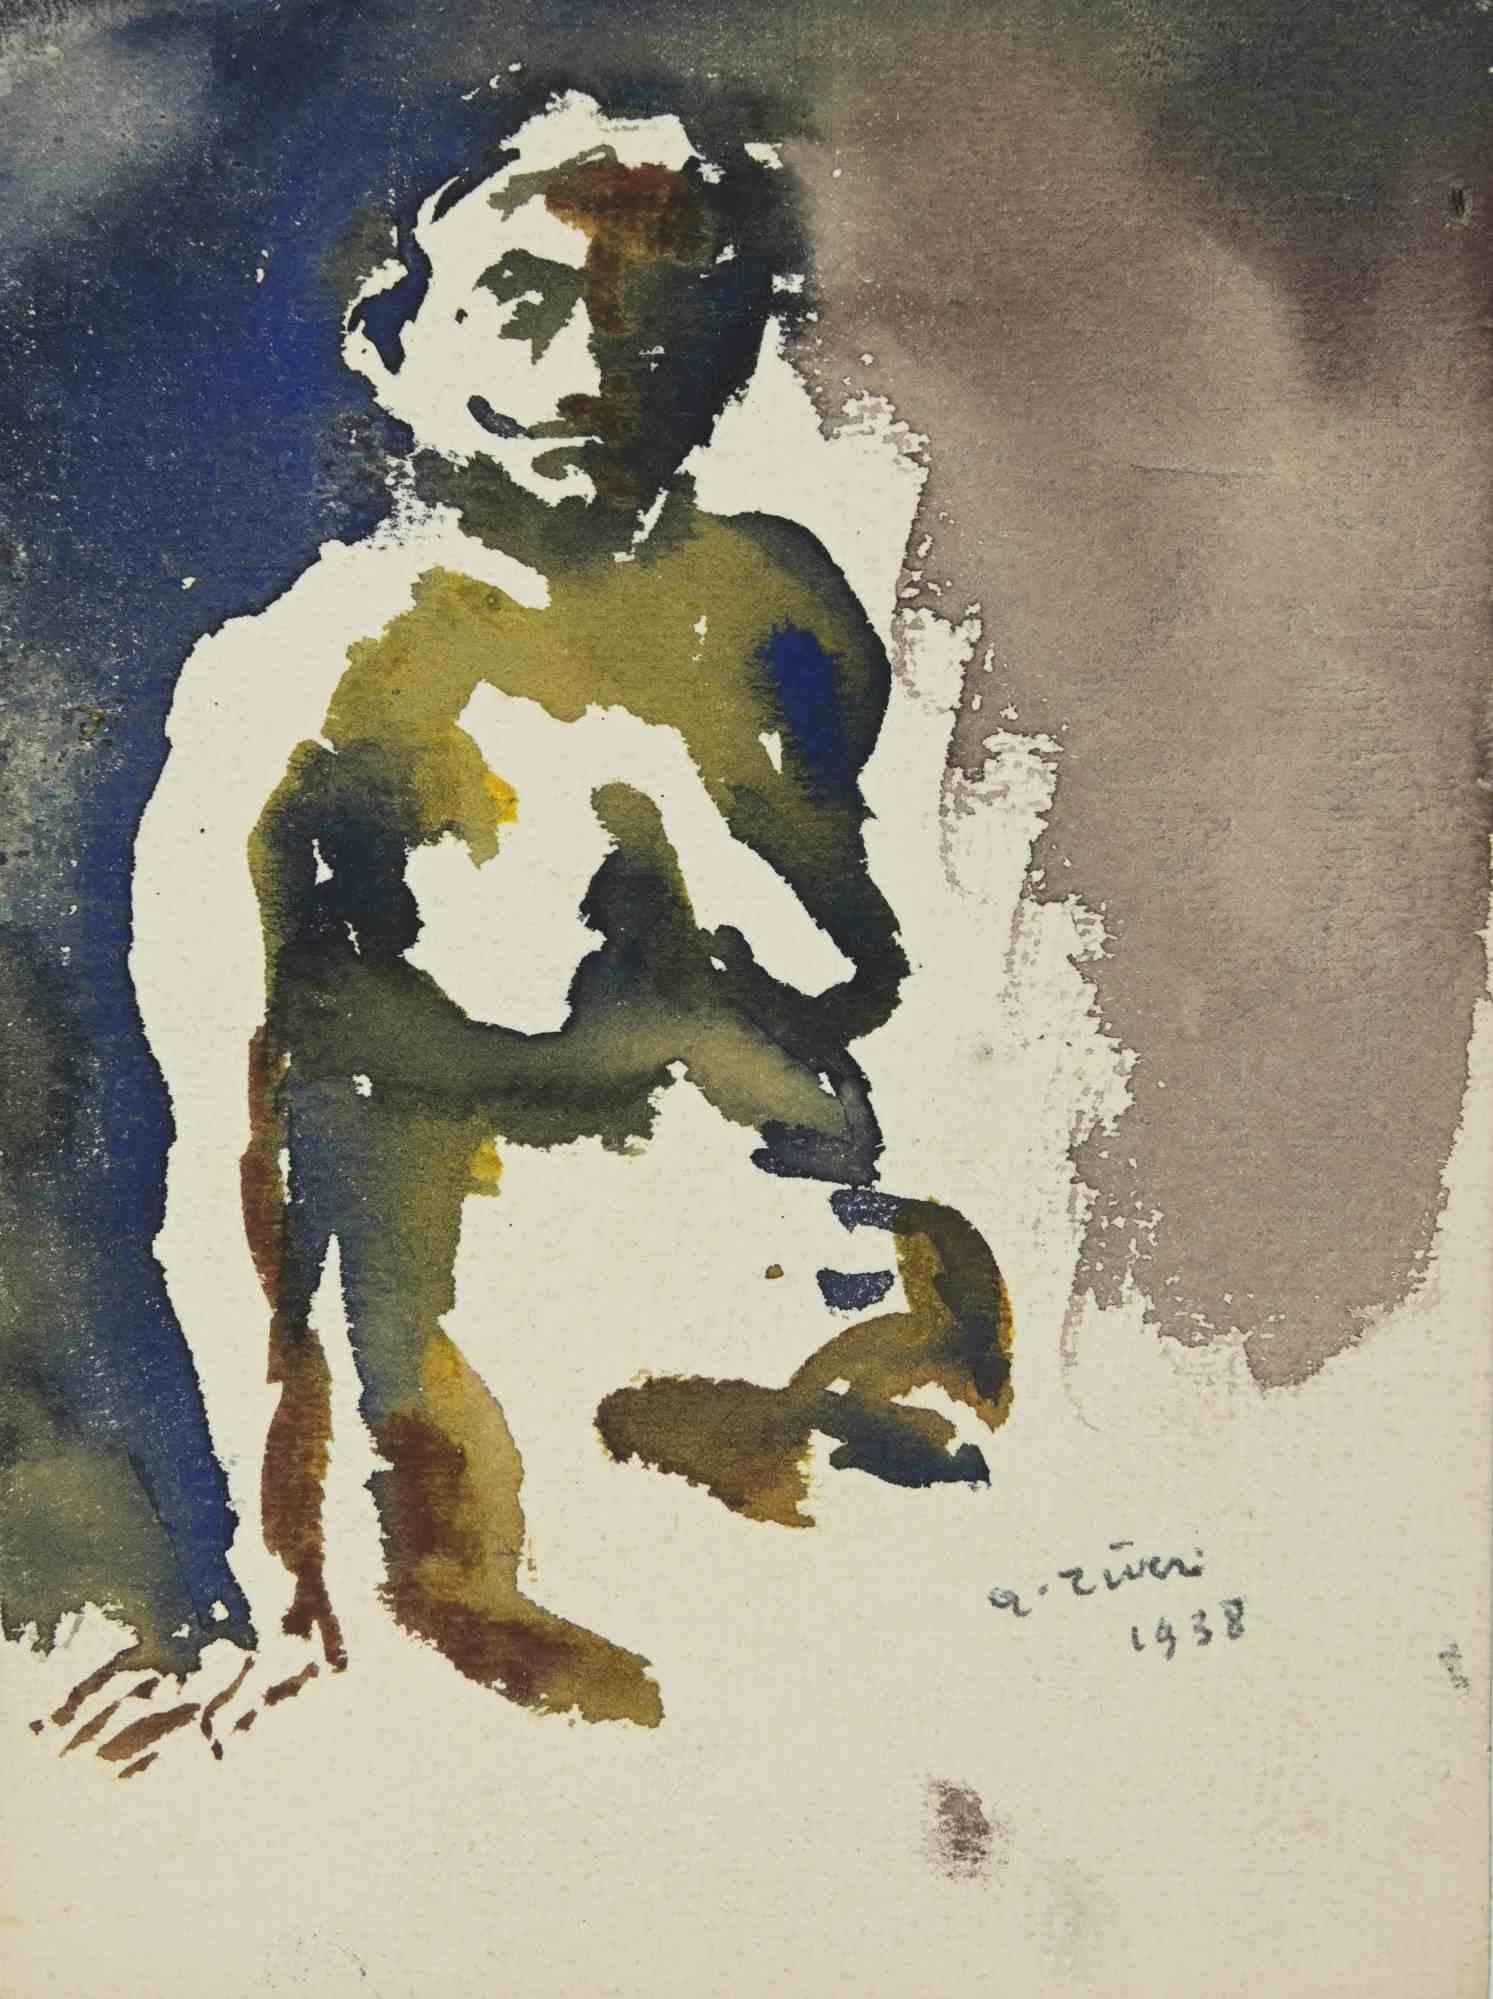 Der Akt ist eine Zeichnung von Alberto Ziveri aus den 1930er Jahren.

Aquarell auf Papier

Handsigniert.

In gutem Zustand. 

Das Kunstwerk wird durch geschickte Striche meisterhaft dargestellt.

Alberto Ziveri (Rom, 1908 - 1990), der italienische